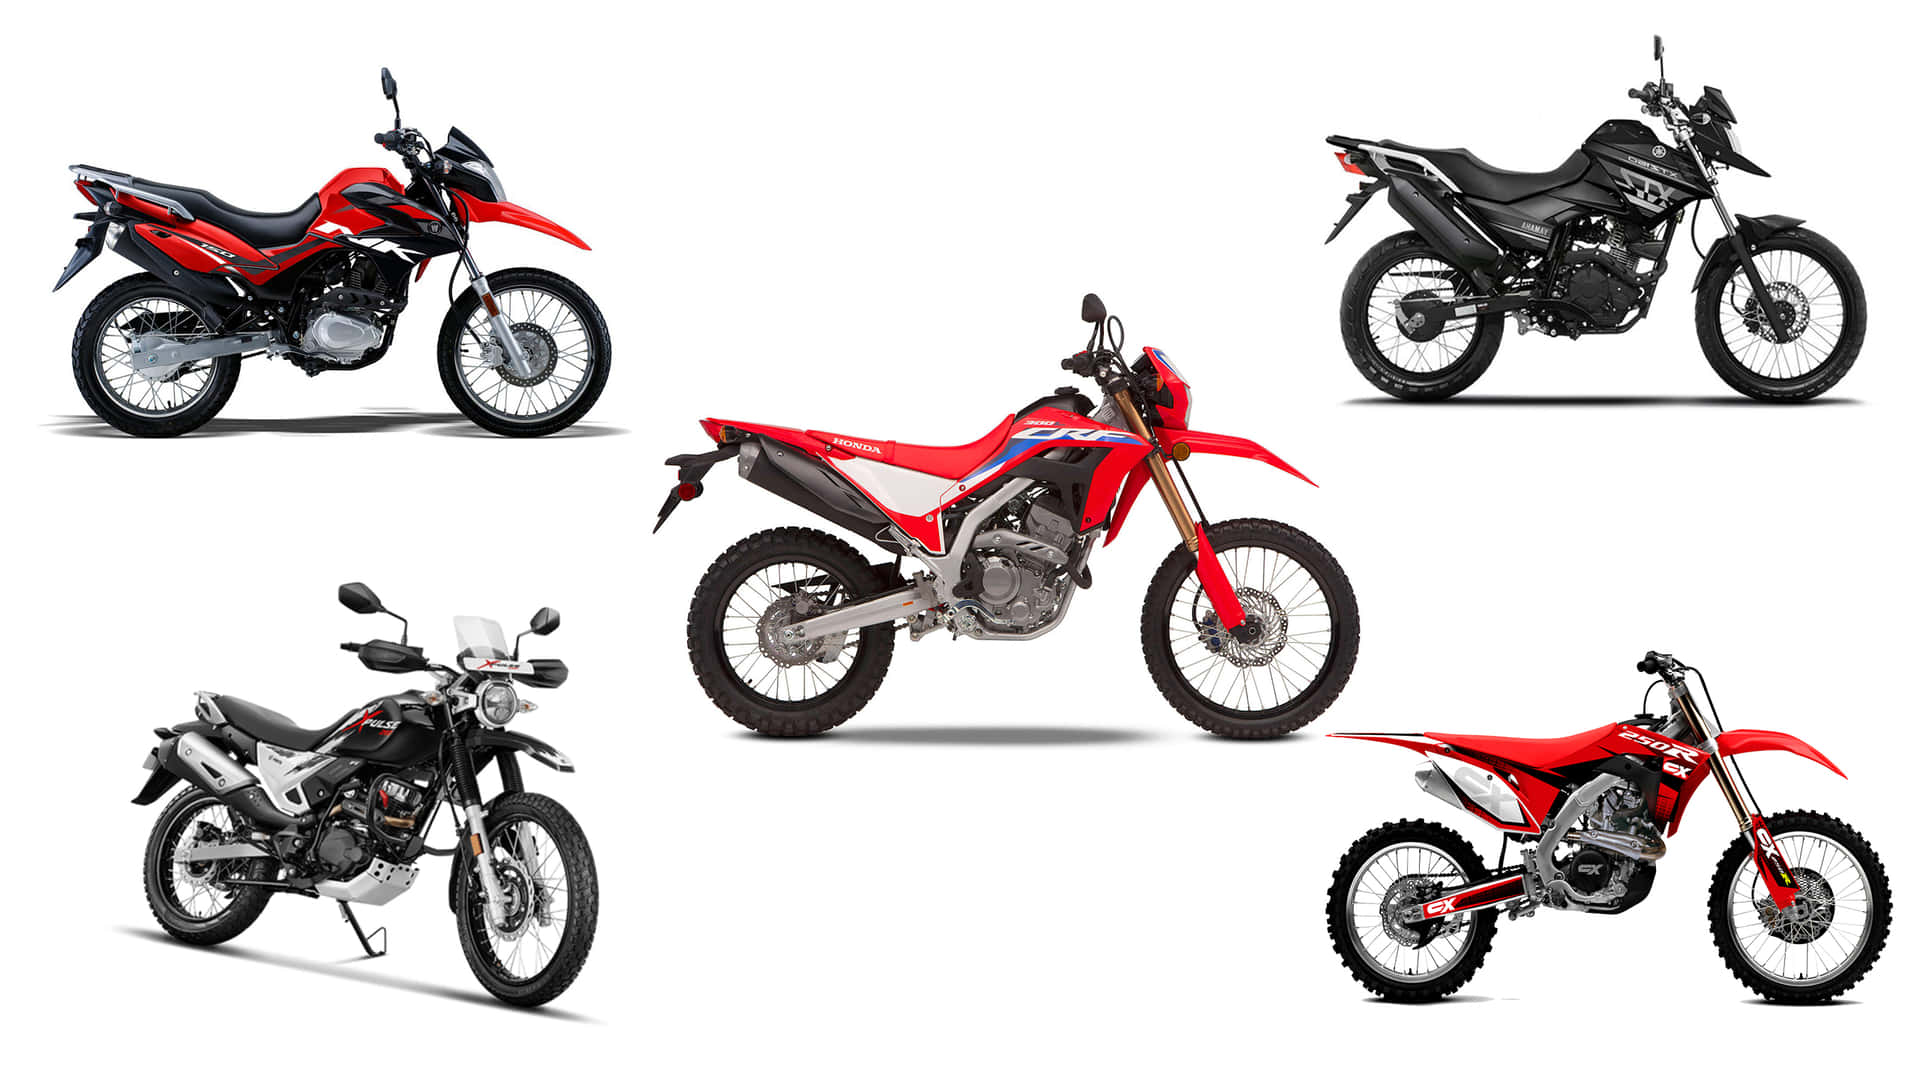 Vierverschiedene Arten Von Geländemotorrädern Auf Weißem Hintergrund.